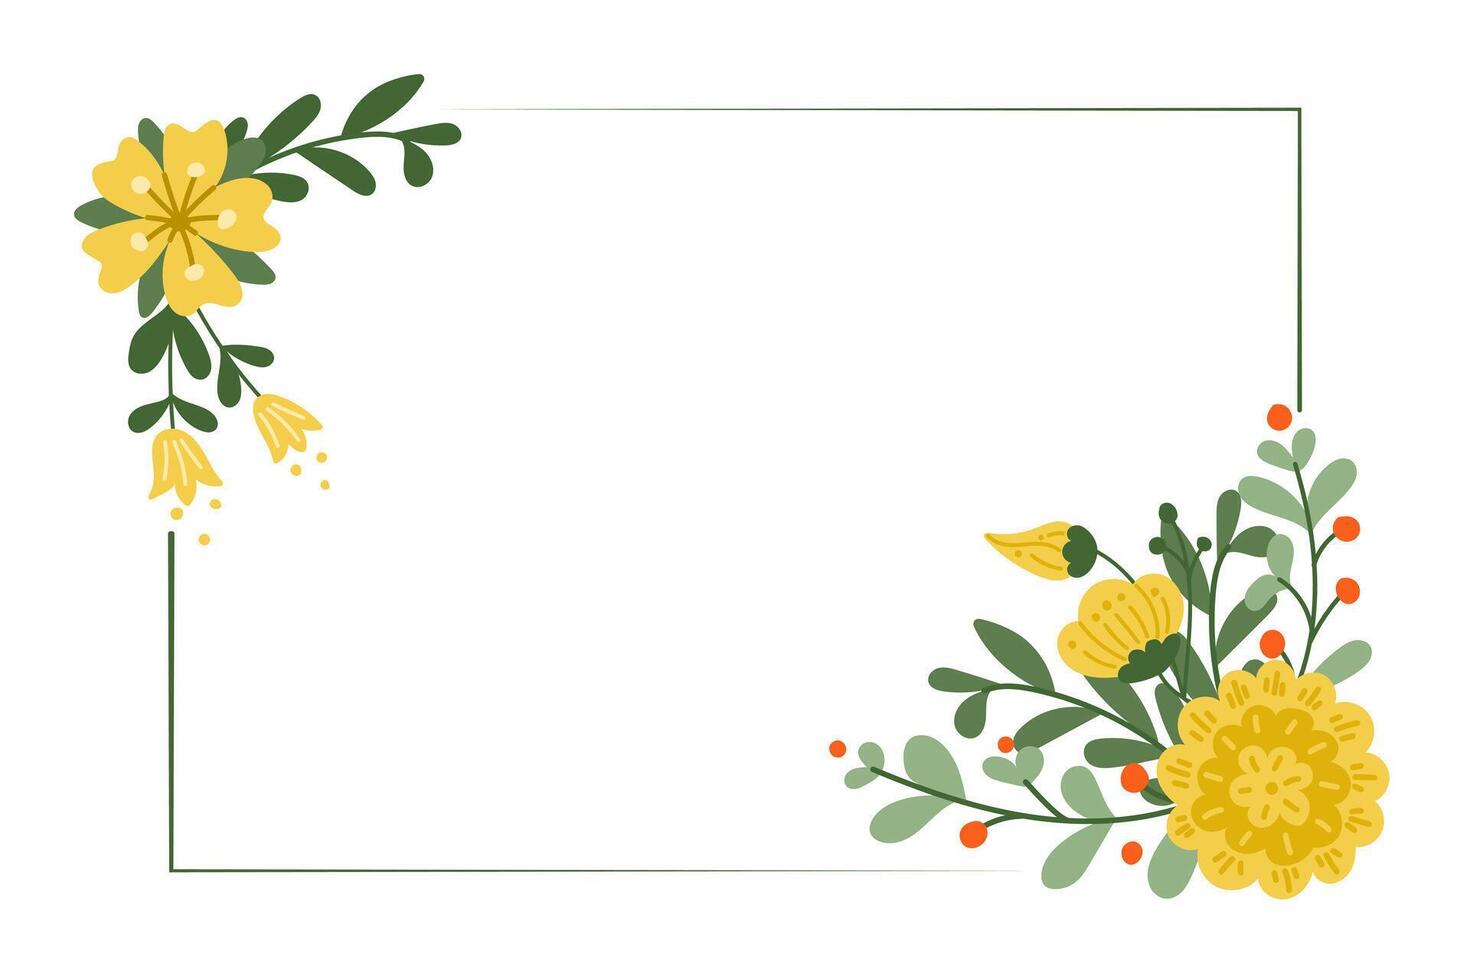 cumprimento cartão modelo com flores dentro plano simples estilo. horizontal floral bandeira para social meios de comunicação ou convite para casamento, aniversário ou aniversário. moderno abstrato mão desenhado flores isolado vetor